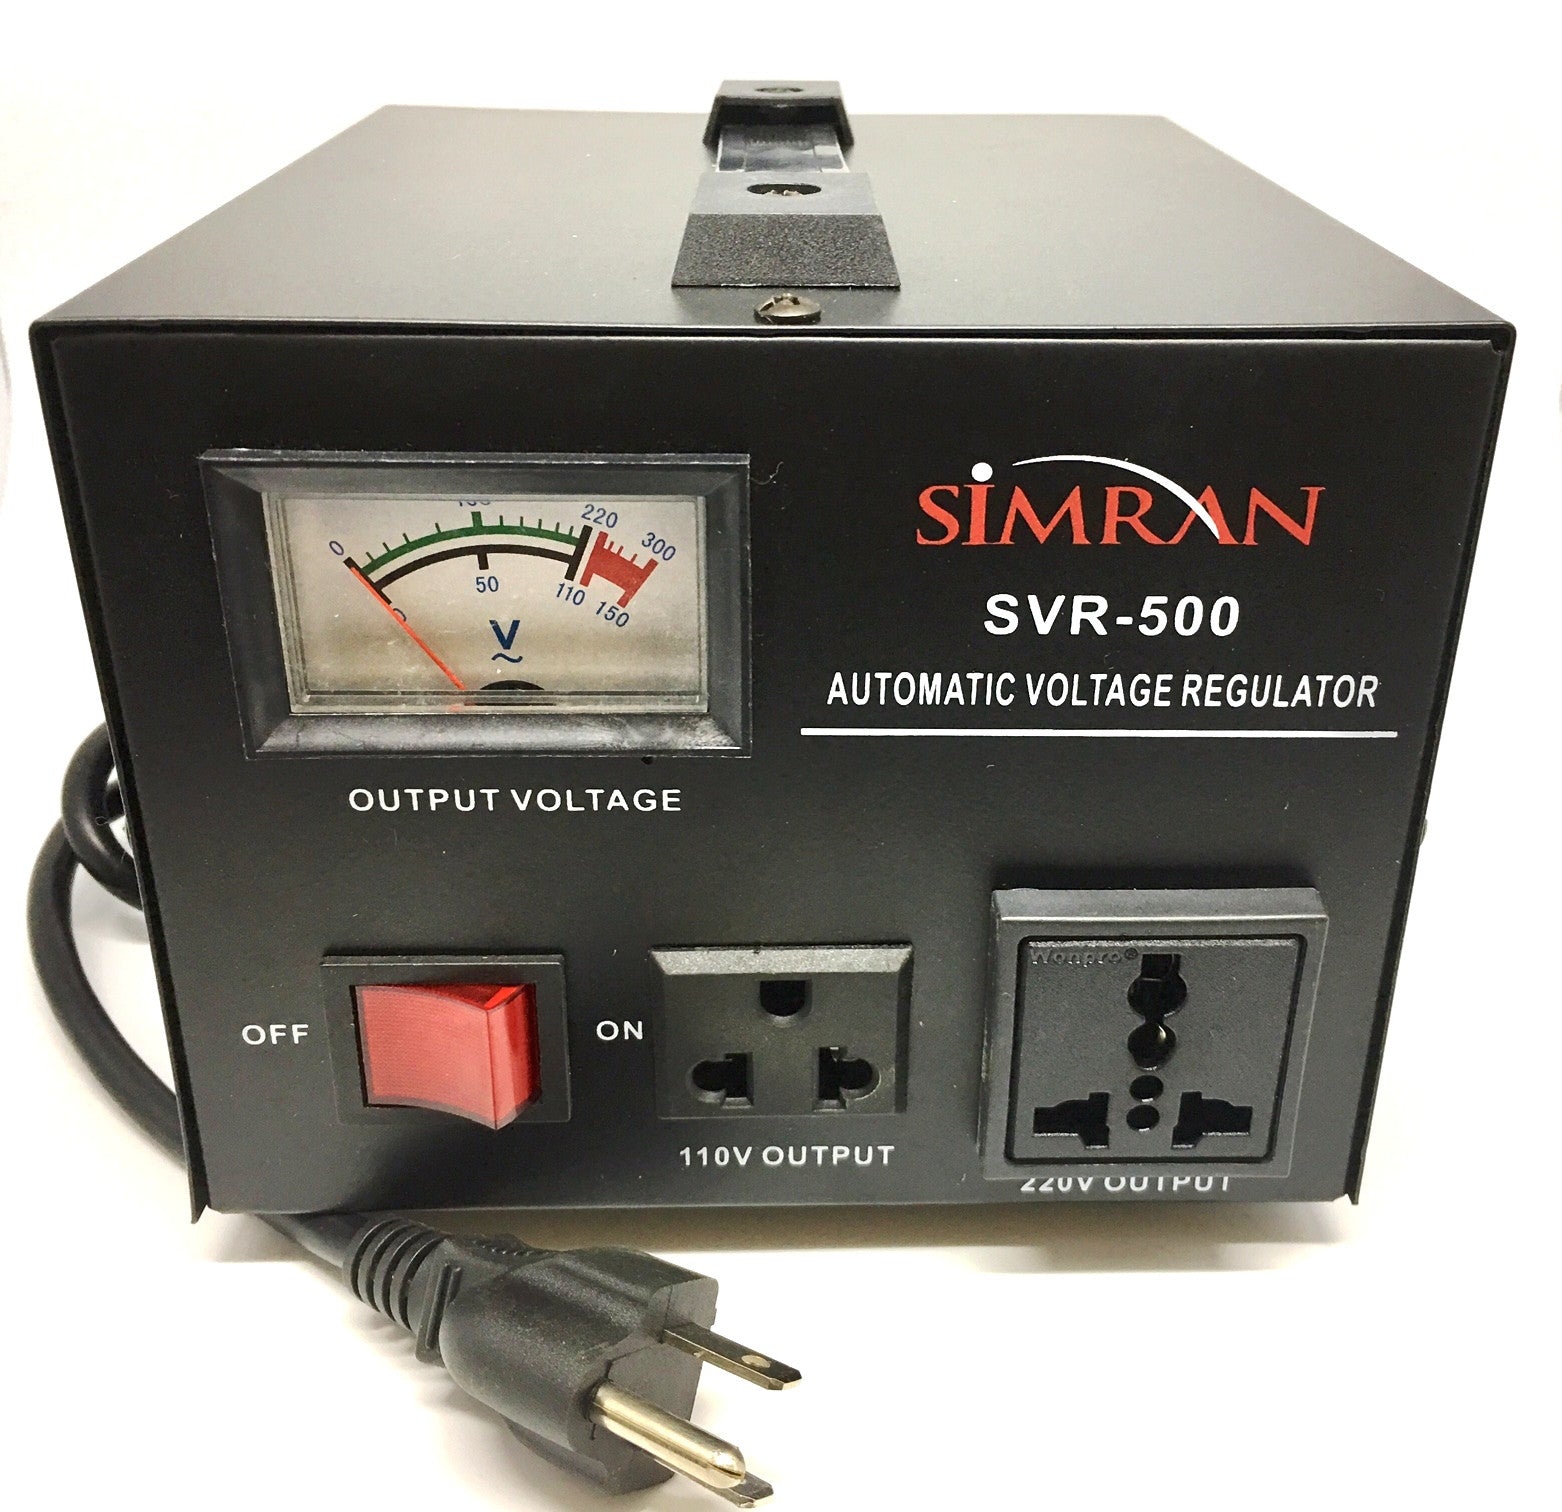 SVR-500 Automatic Voltage Regulator with Built-in 110-240V